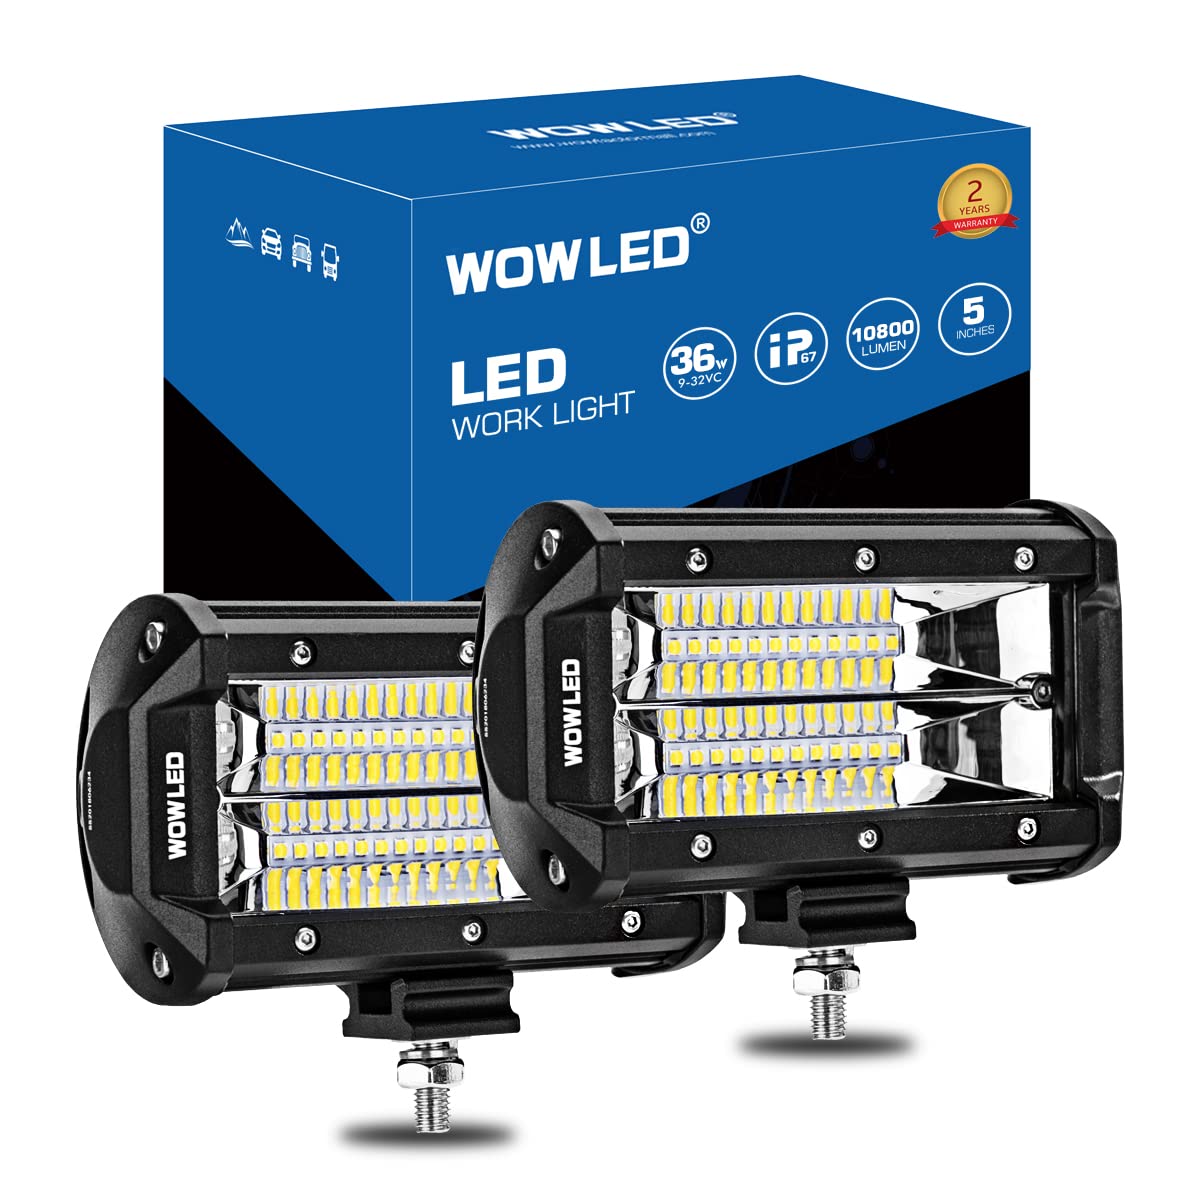 WOWLED LED Arbeitslichtbalken, 2x 5 Zoll 36W 10800Lumen Zwei Reihen Upgrade Off Road Lichter Lichtbalken, IP67 Offroad Fahrlichtbalken für Auto Camp Truck UTE 4x4 12V 24V von WOWLED